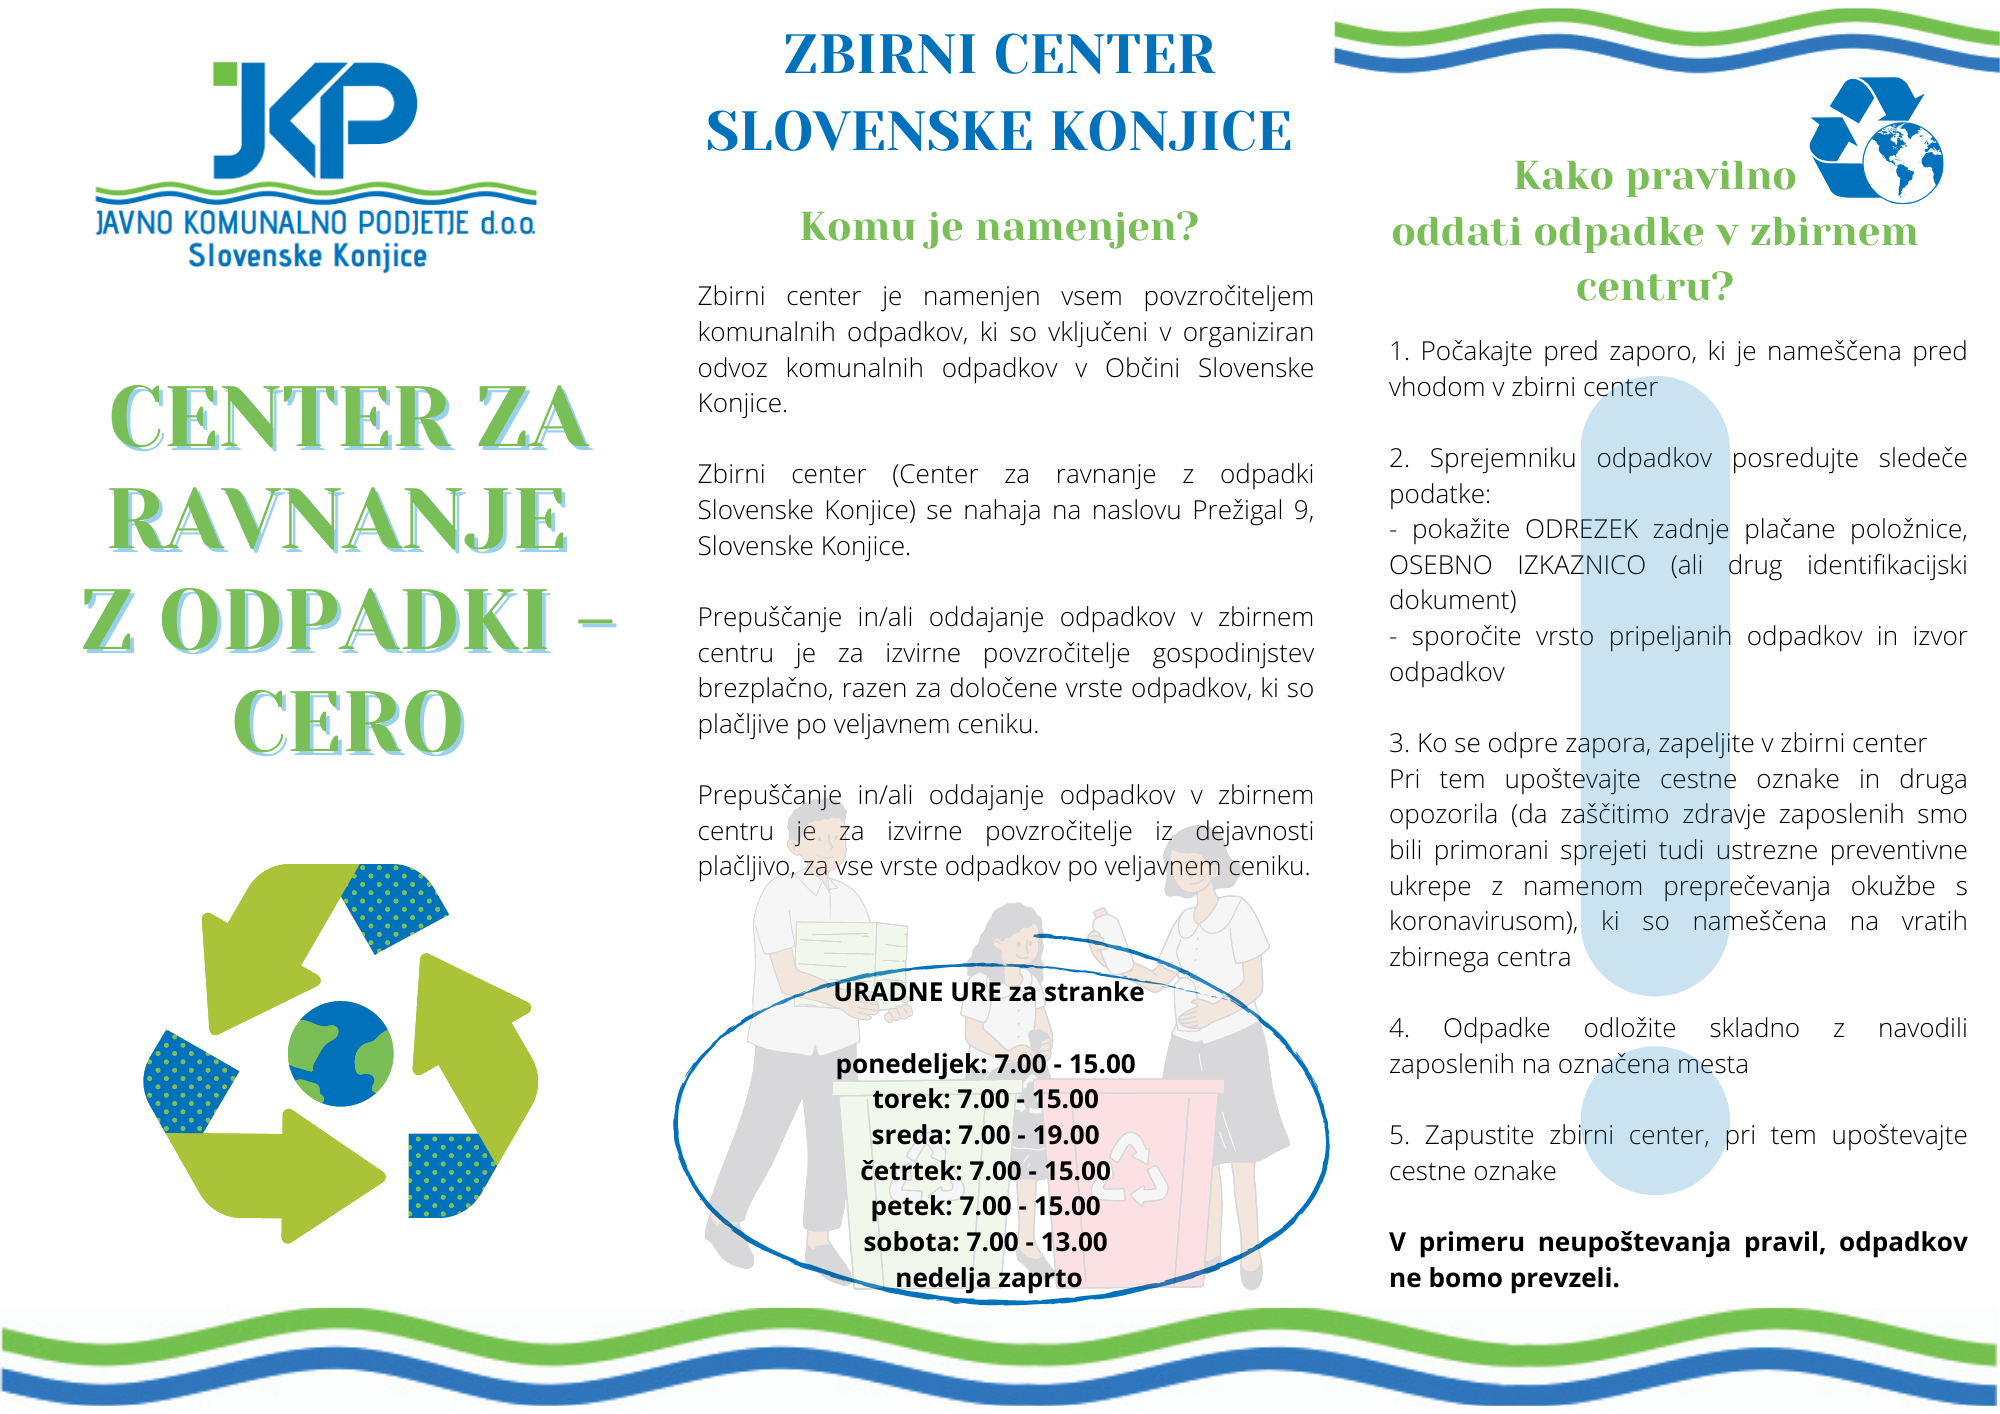 Oddaja odpadkov - Zbirni center Slovenske Konjice